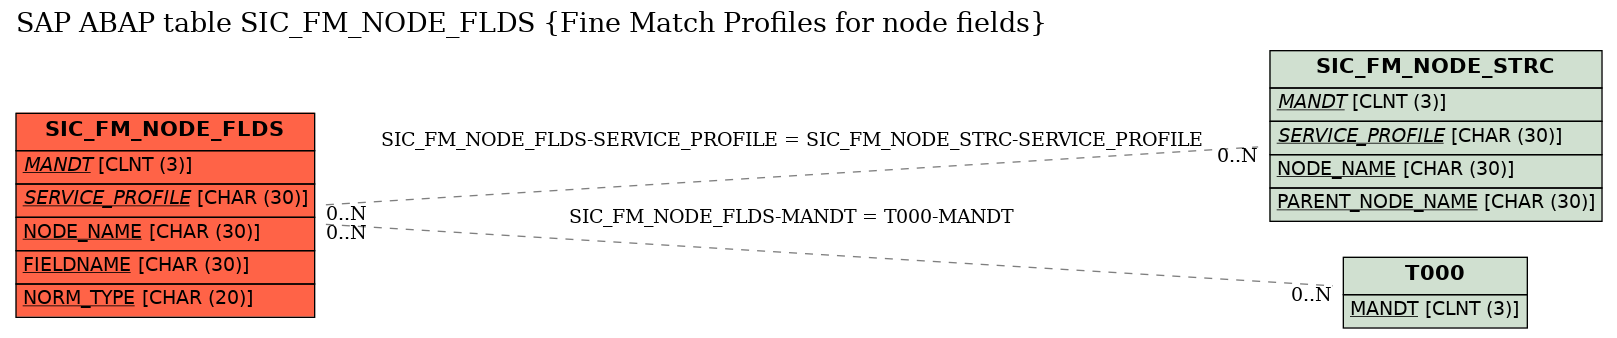 E-R Diagram for table SIC_FM_NODE_FLDS (Fine Match Profiles for node fields)